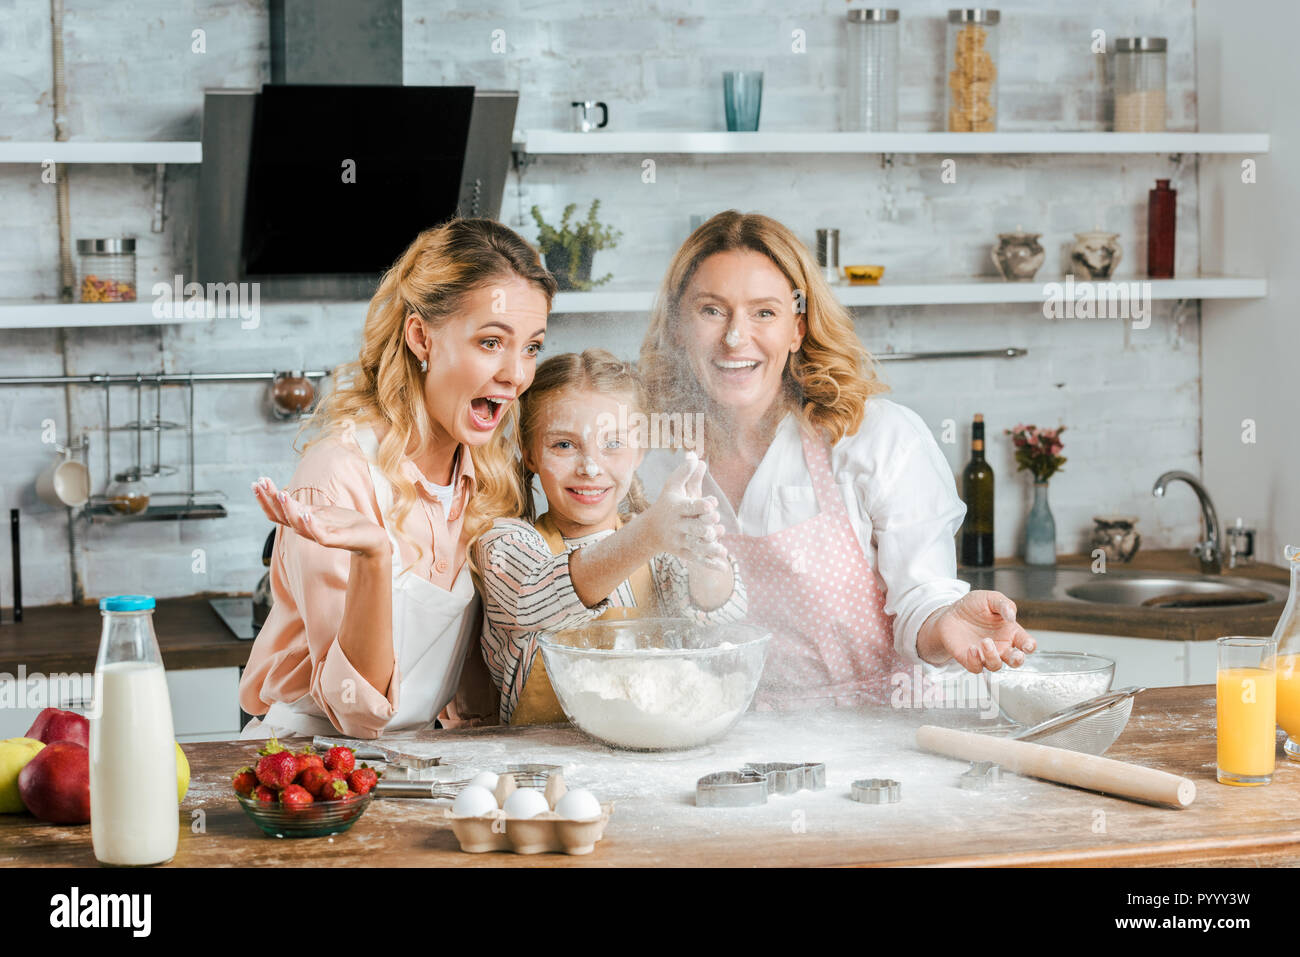 Bambino sorridente battendo le mani con la farina durante la cottura con la madre e la nonna a casa Foto Stock